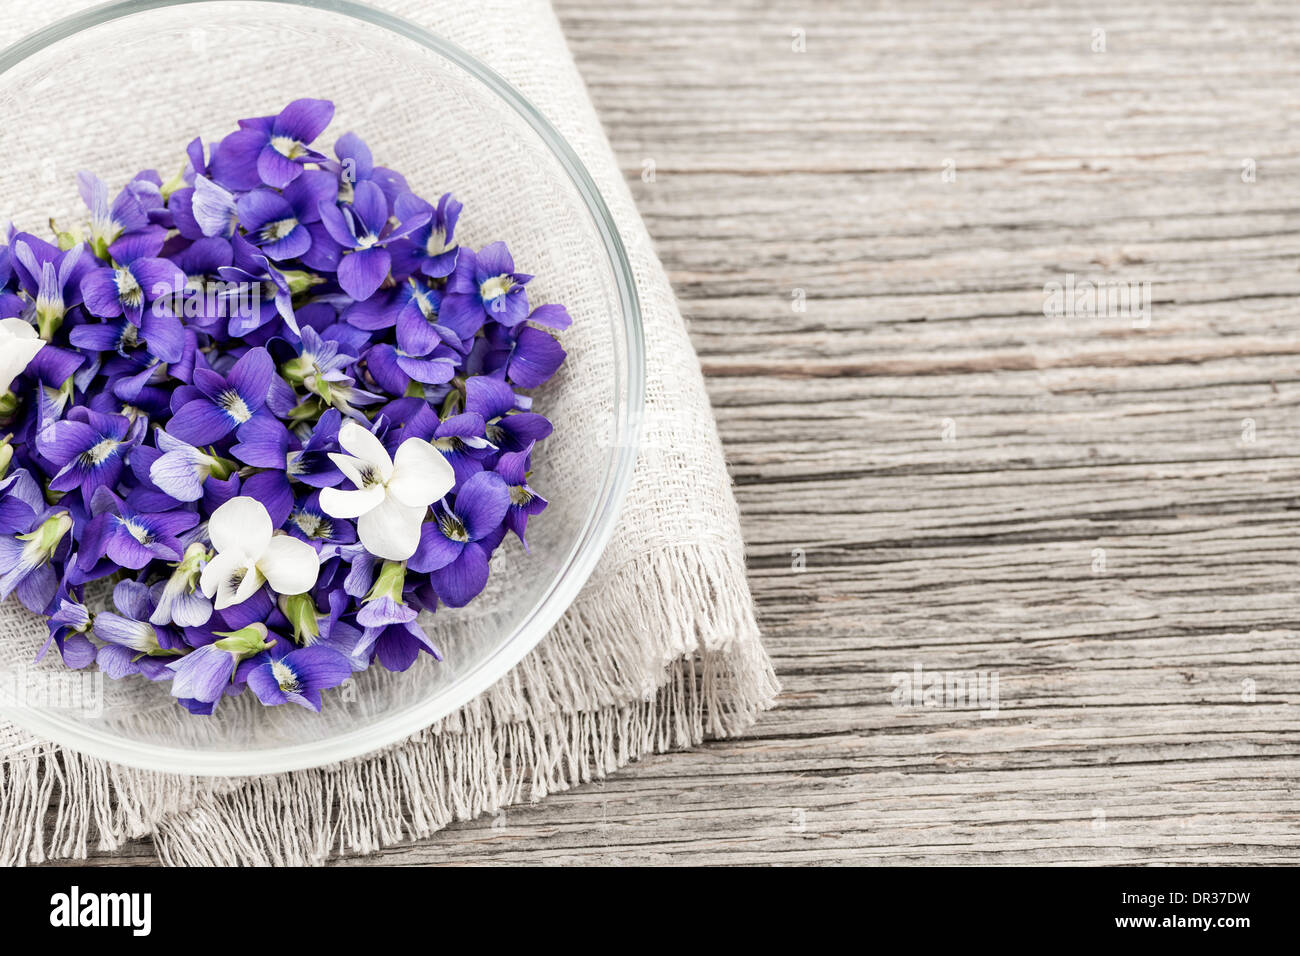 Sammelpflanzen essbare lila und weißen violetten Blüten in Schüssel auf Holz Hintergrund mit Textfreiraum Stockfoto